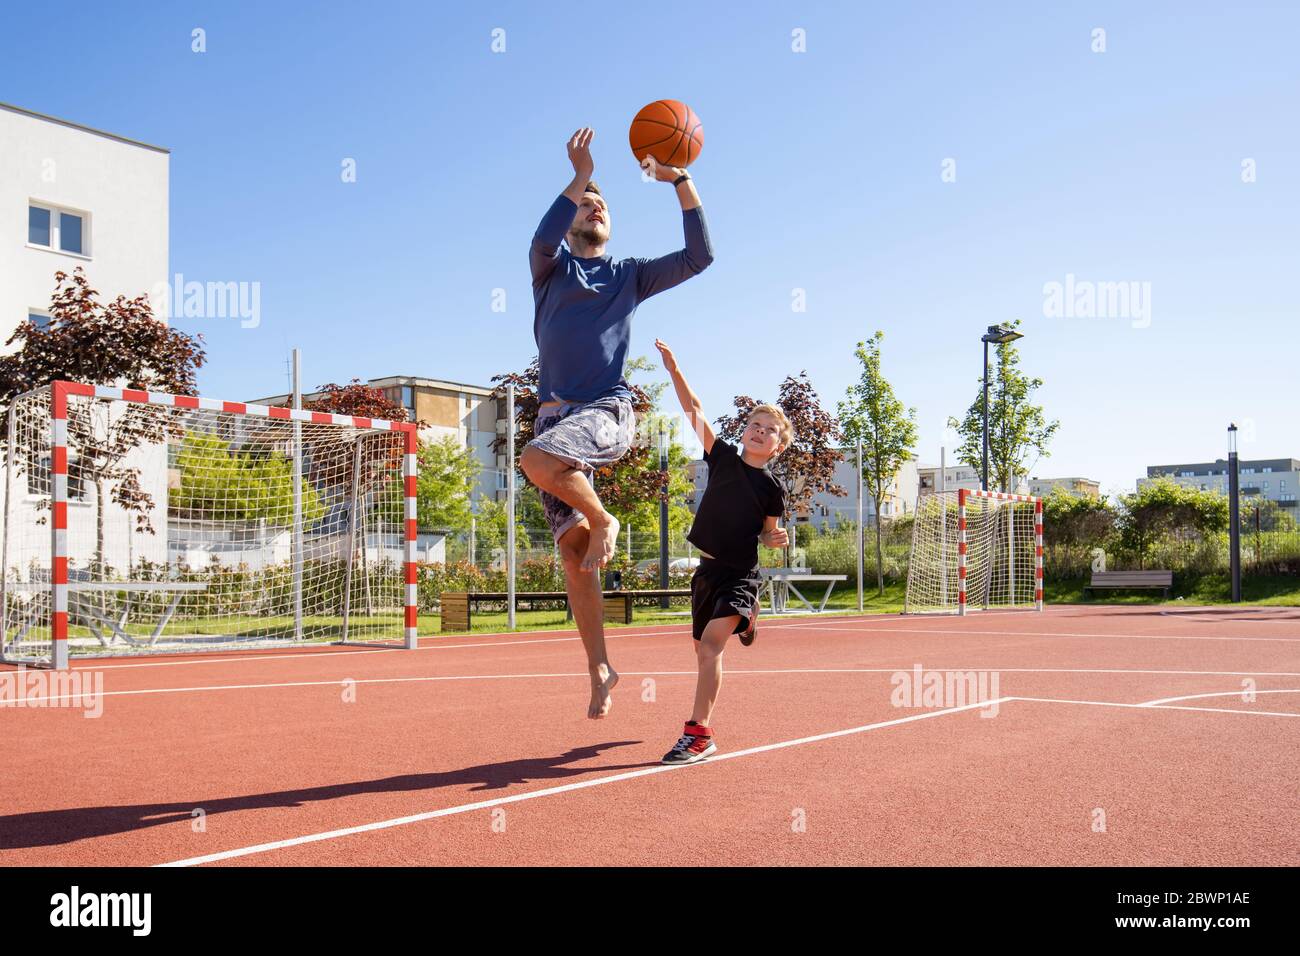 Papa et fils jouant au basket-ball pieds nus avec le ballon sur un terrain de jeu Banque D'Images